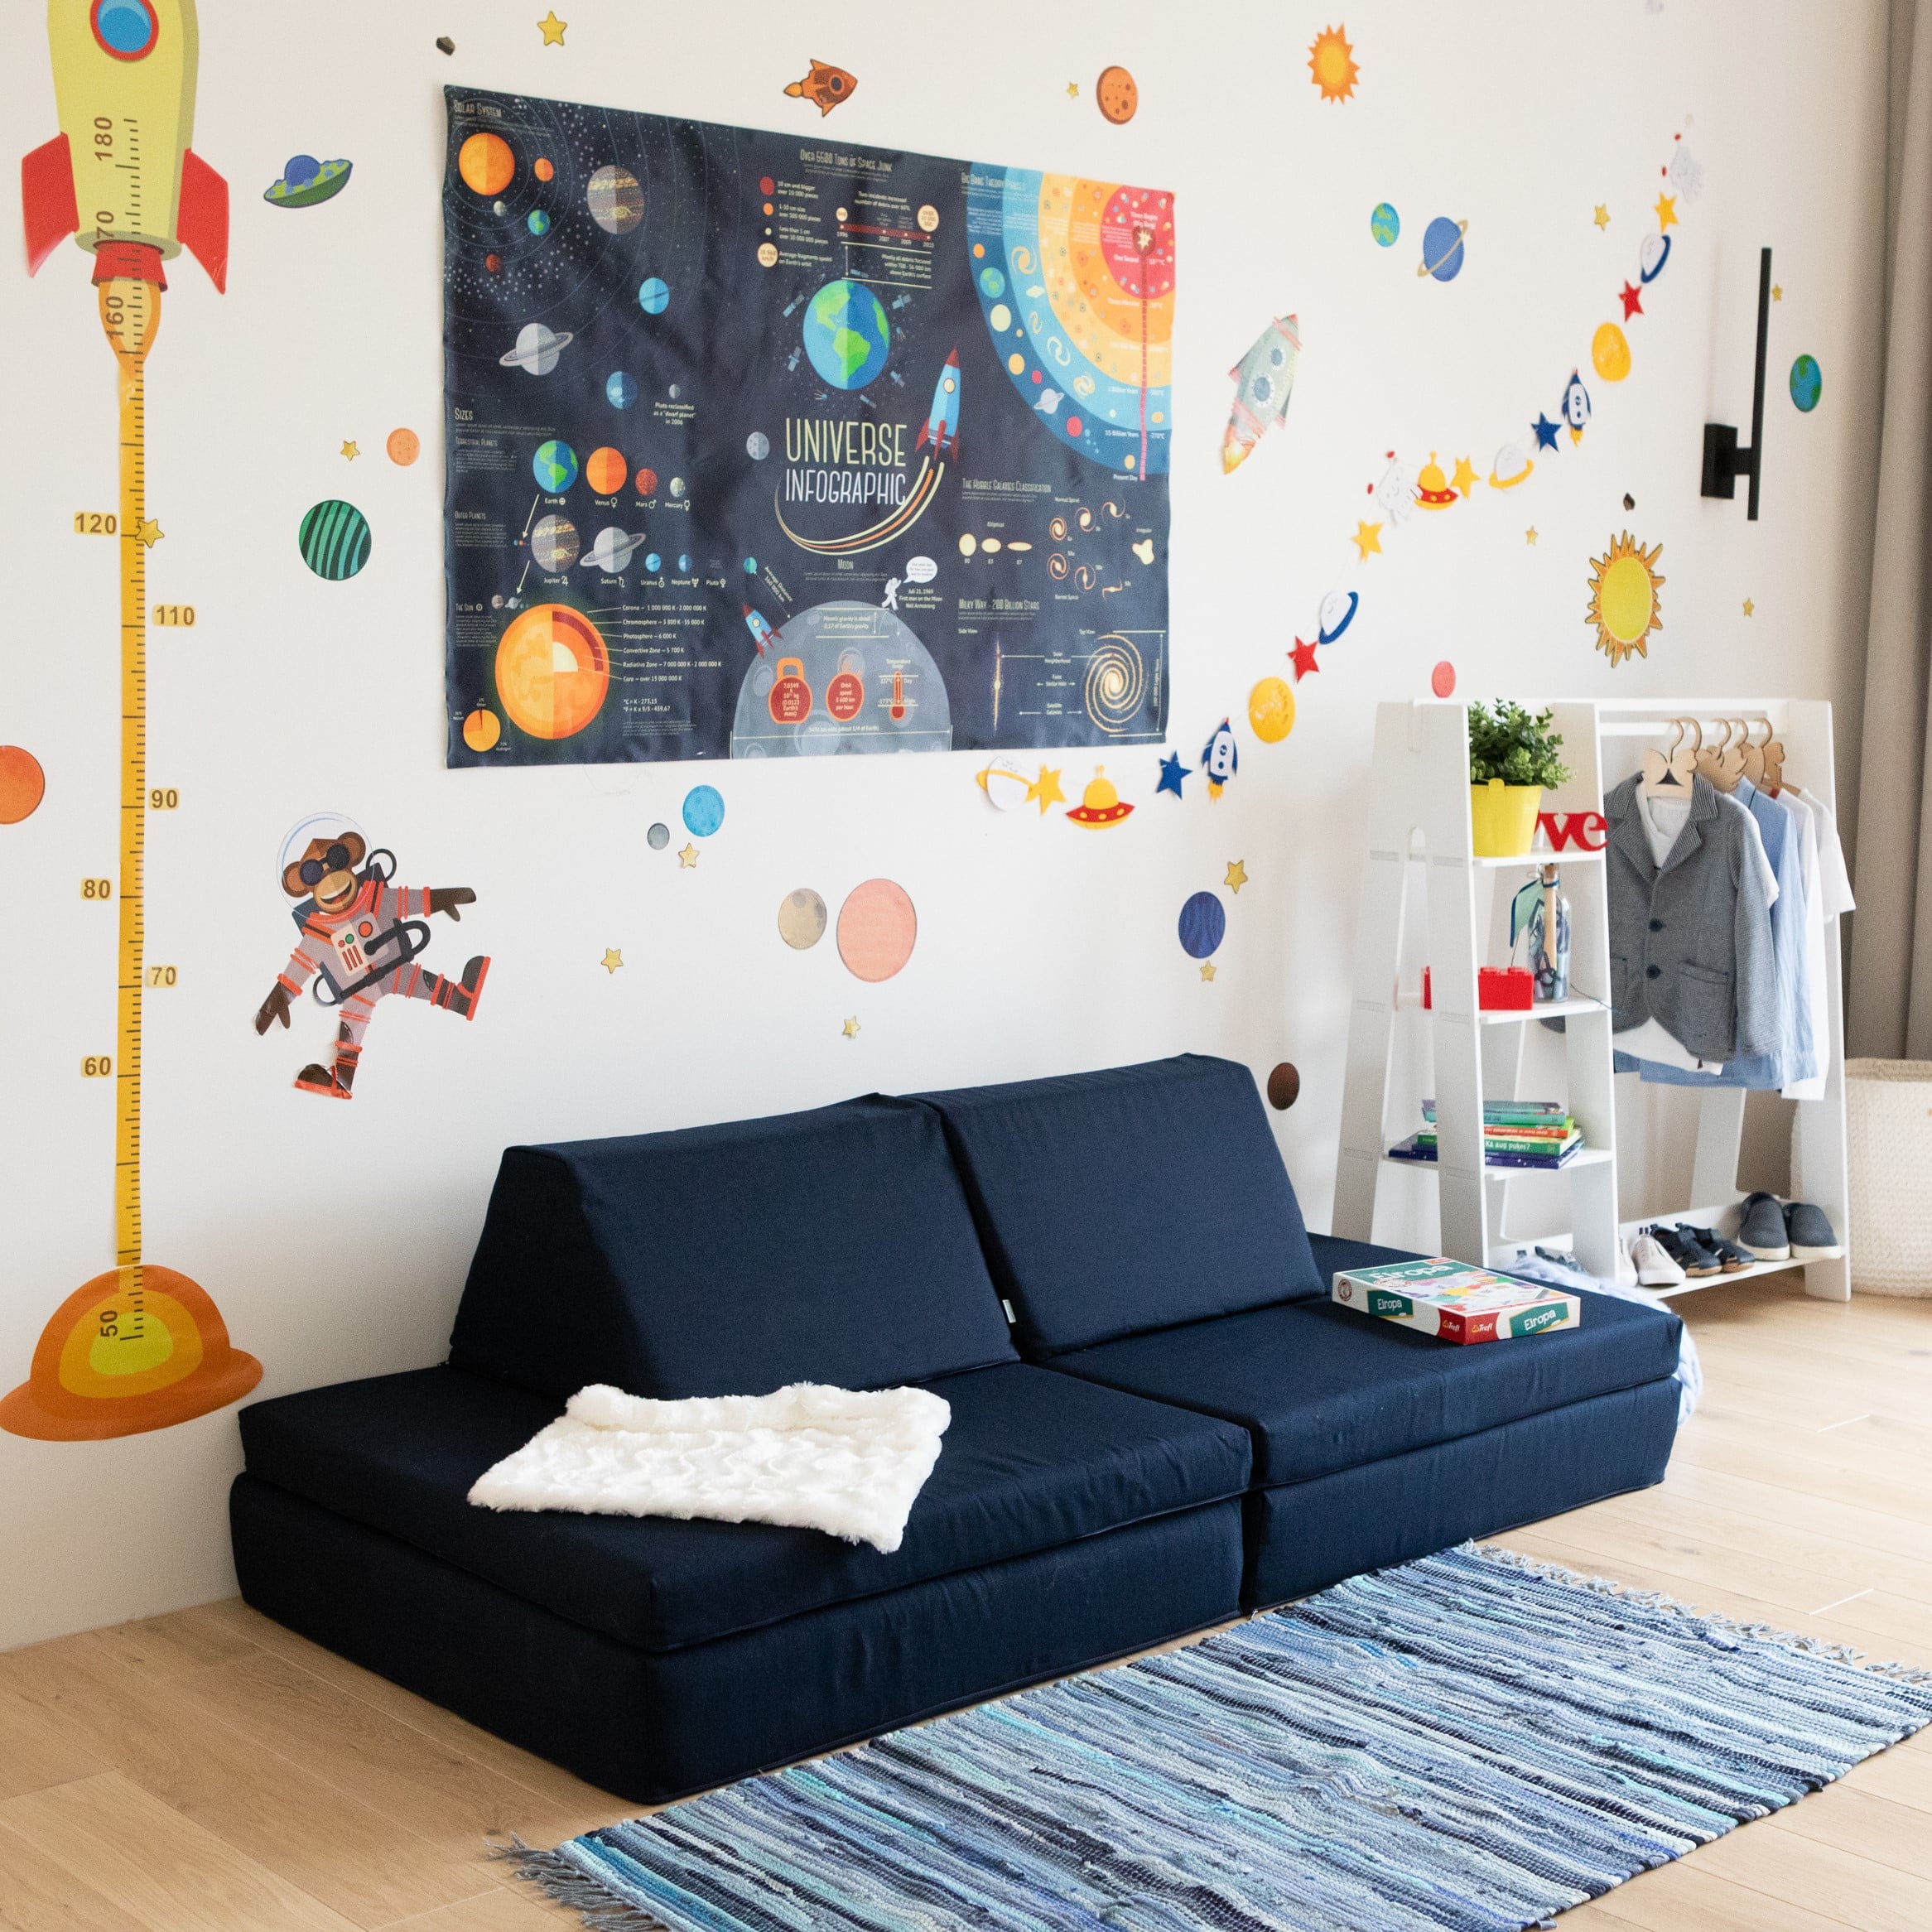 Canapé enfant XL - le canapé de jeu flexible et modulable pour les enfants